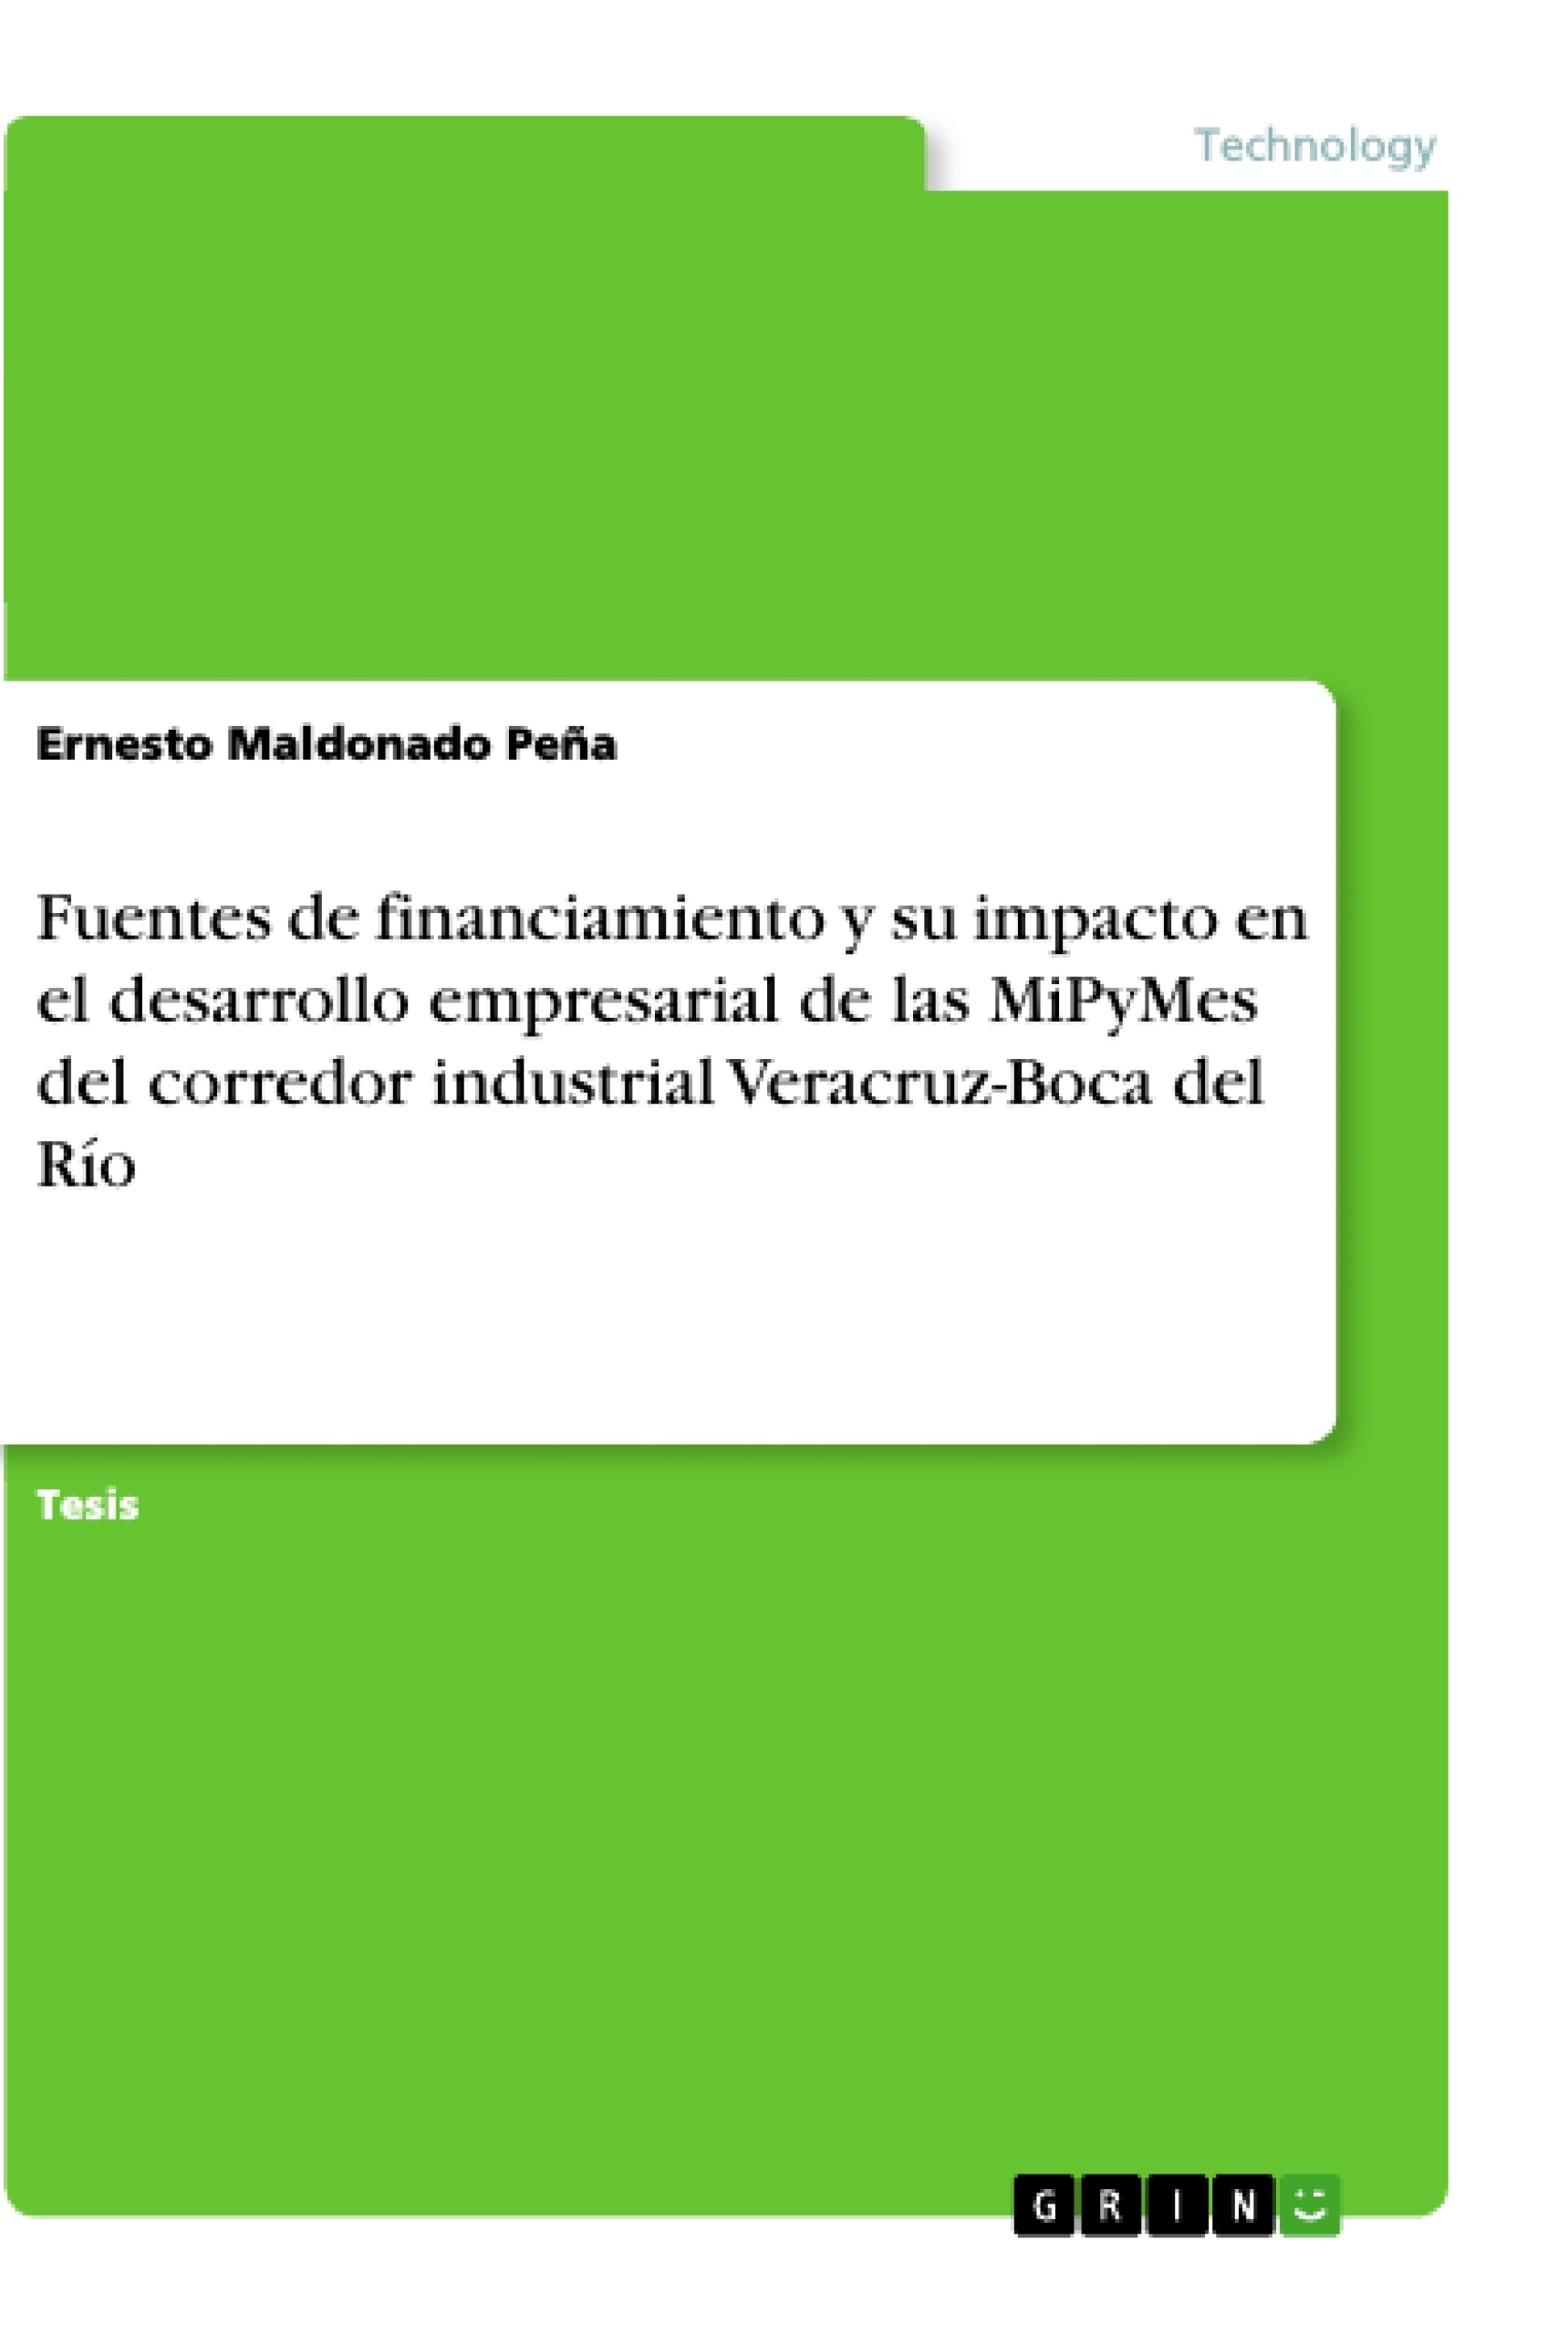 Titre: Fuentes de financiamiento y su impacto en el desarrollo empresarial de las MiPyMes del corredor industrial Veracruz-Boca del Río